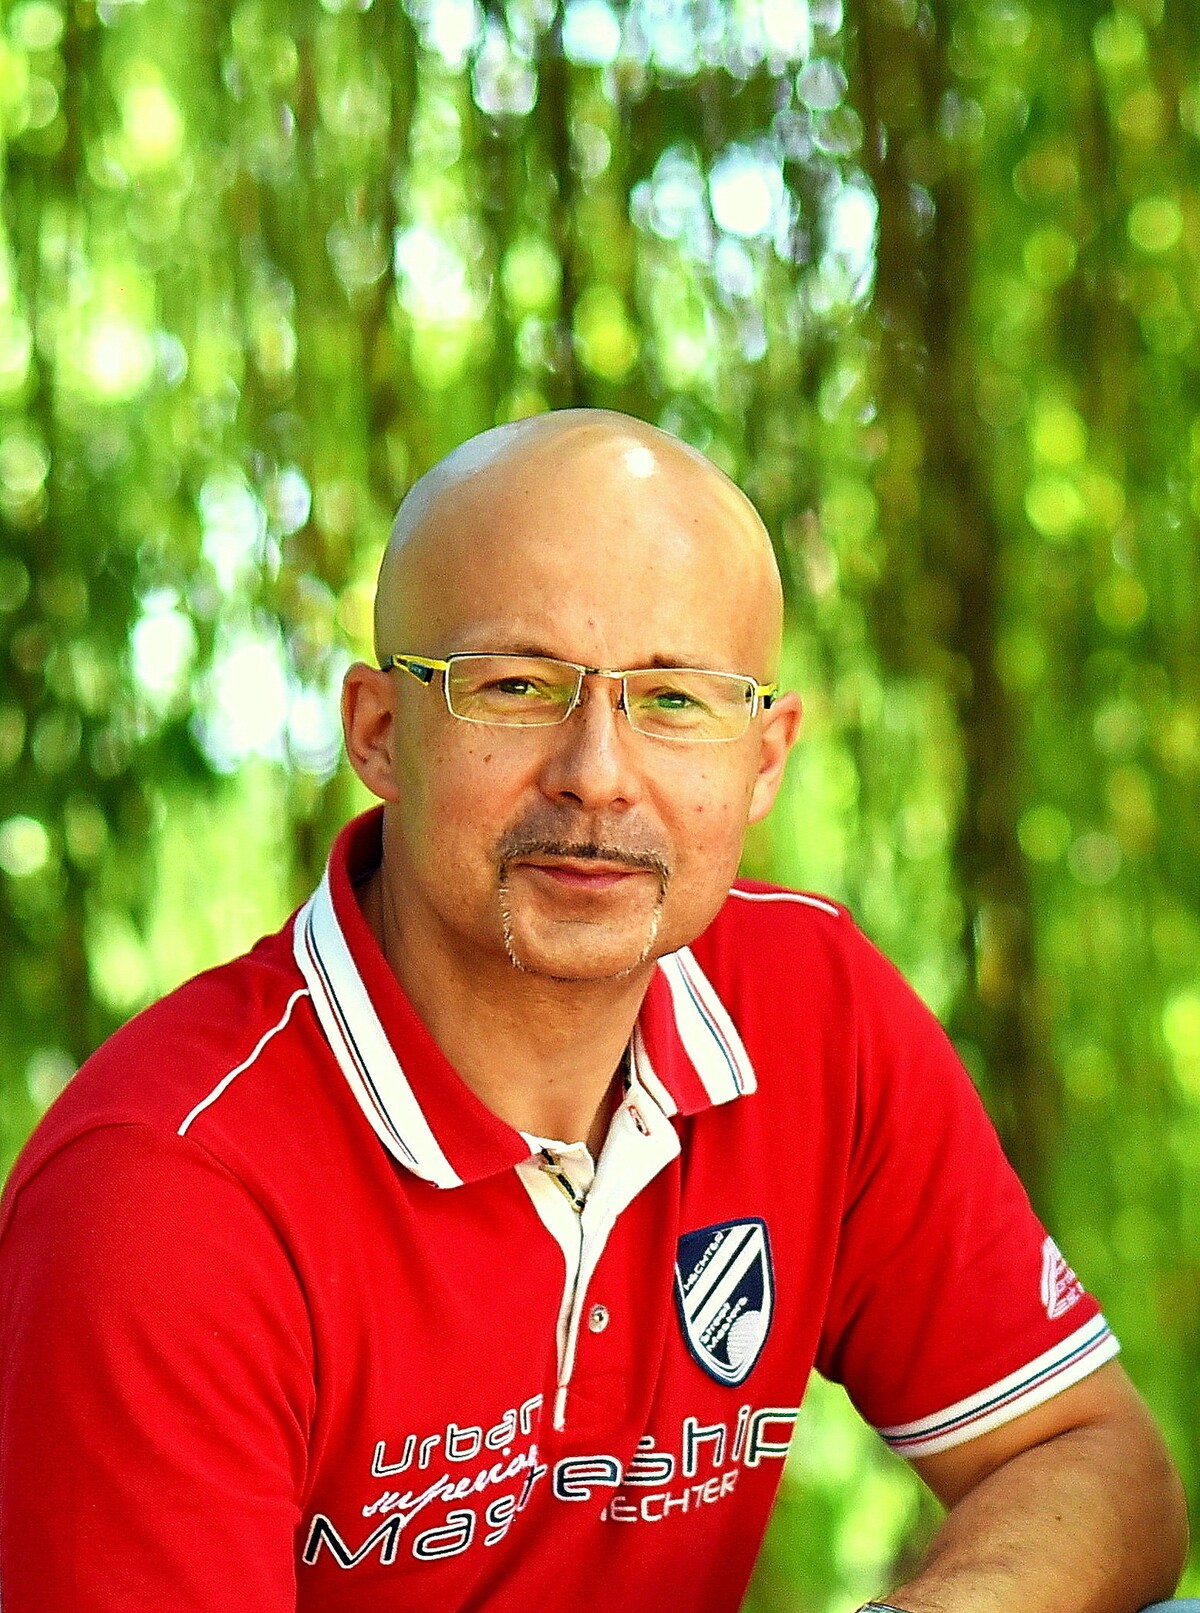 Miroslav Schlesinger